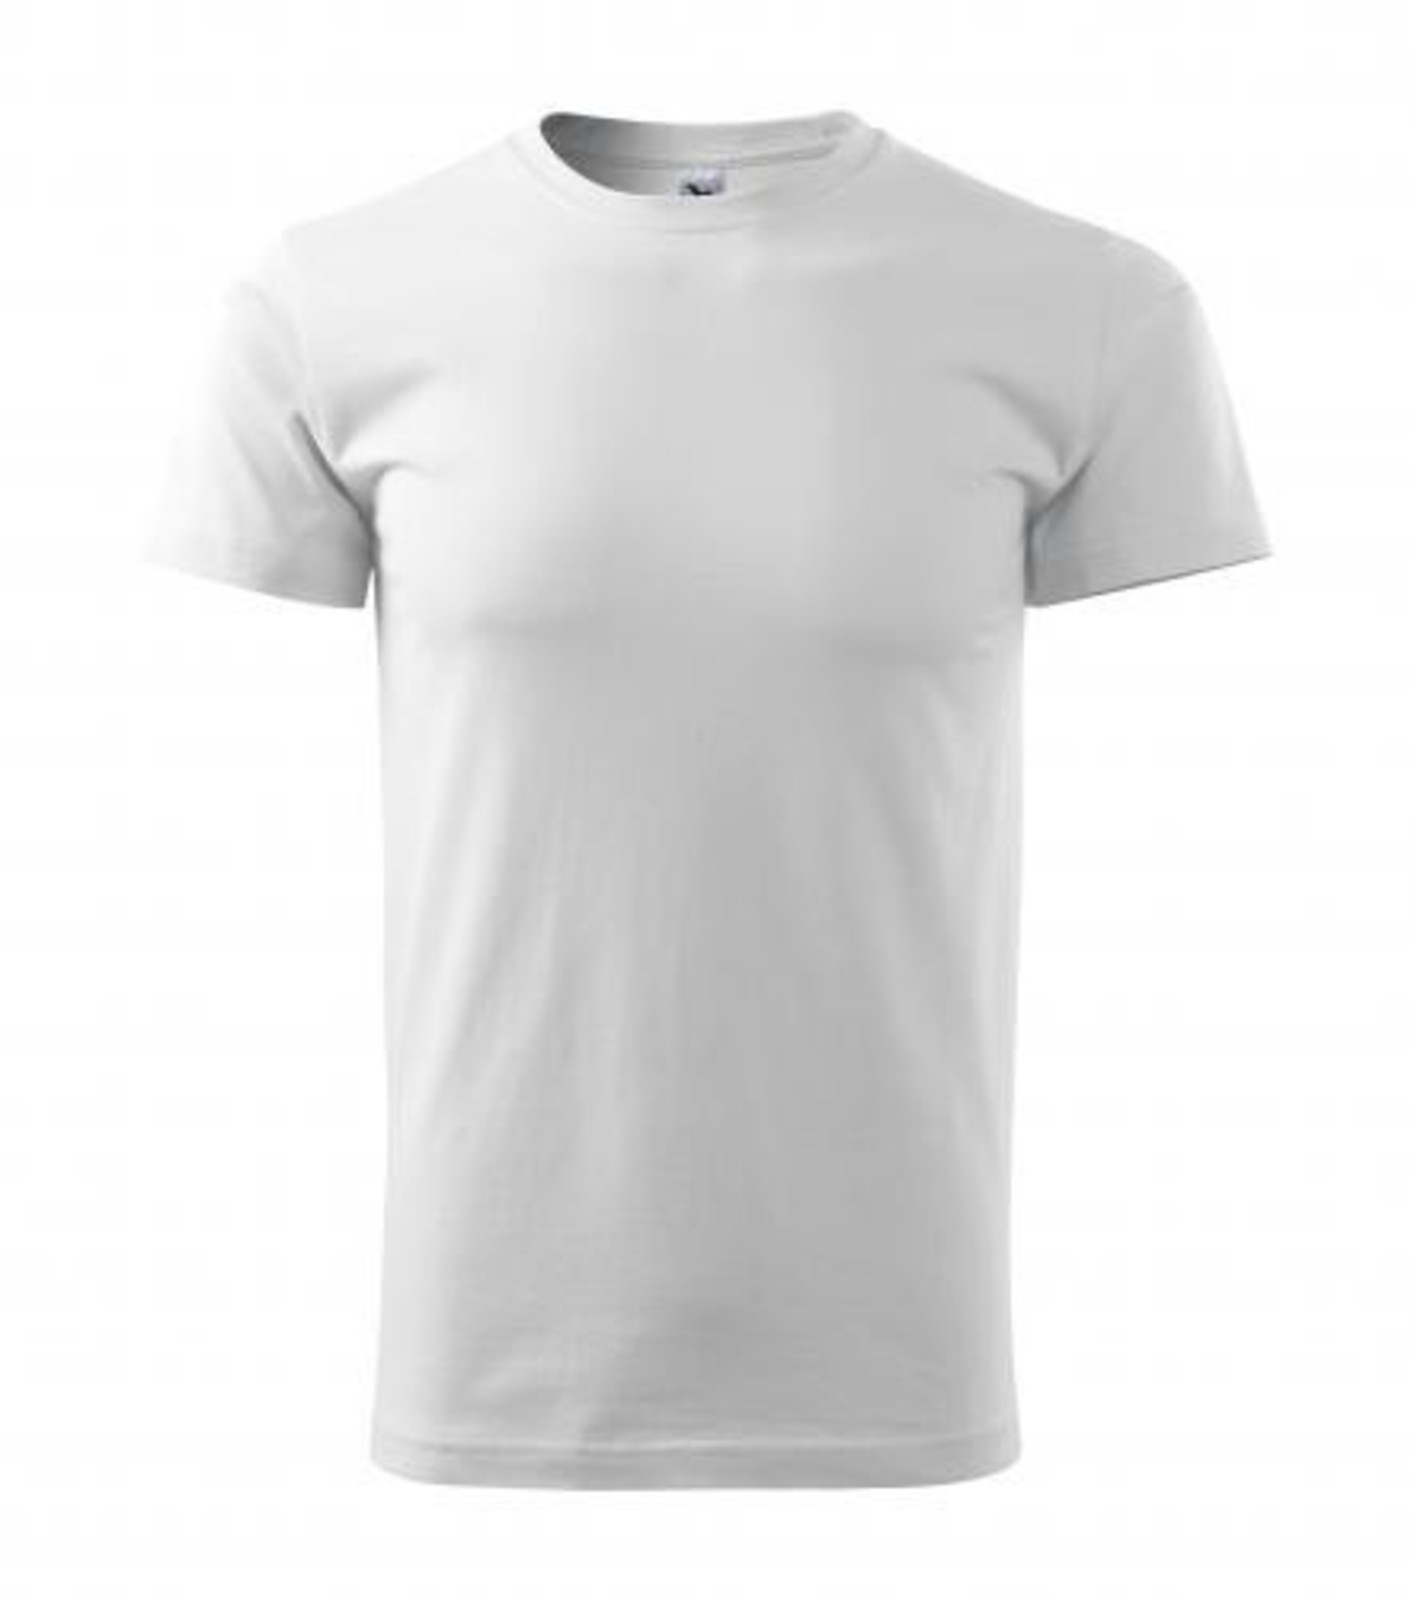 Pánske tričko Malfini Basic 129 - veľkosť: M, farba: biela